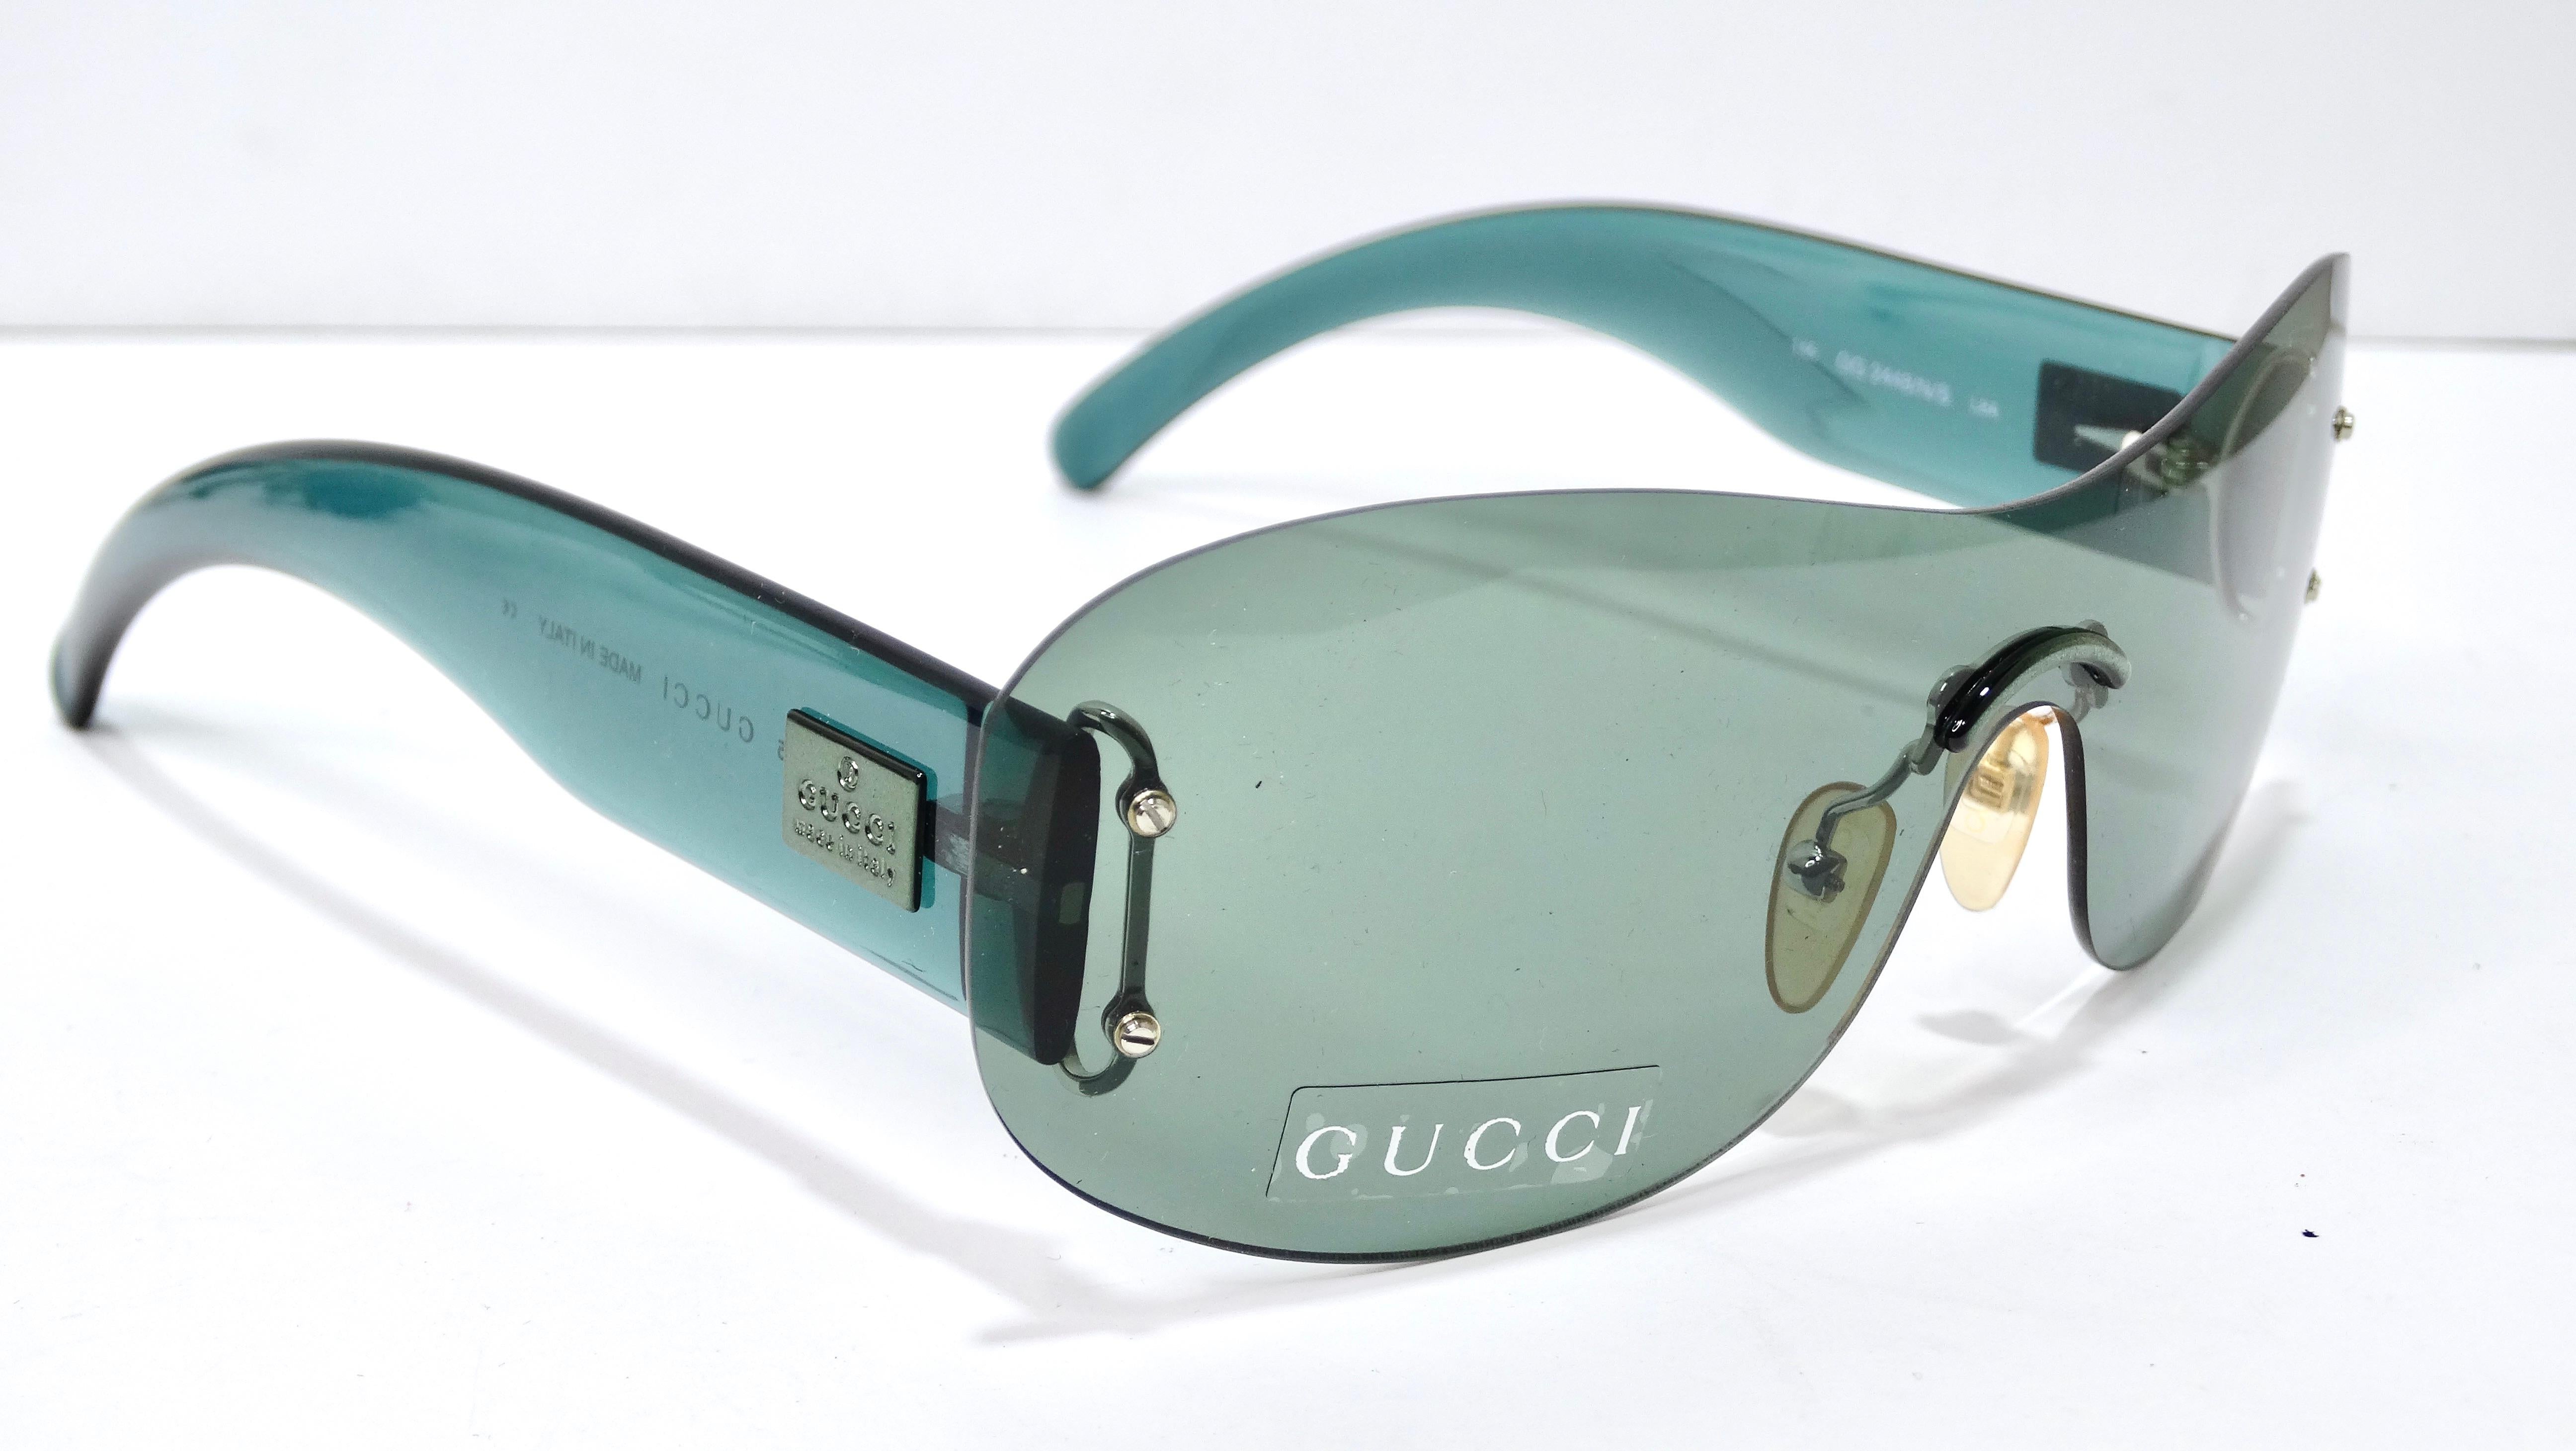 Vintage Gucci von seiner besten Seite! Holen Sie sich ein Stück des kultigen Modehauses mit dieser Deadstock-Sonnenbrille.  Mit den richtigen Accessoires kann man ein Outfit von null auf hundert aufwerten! Probieren Sie es aus mit dieser coolen und